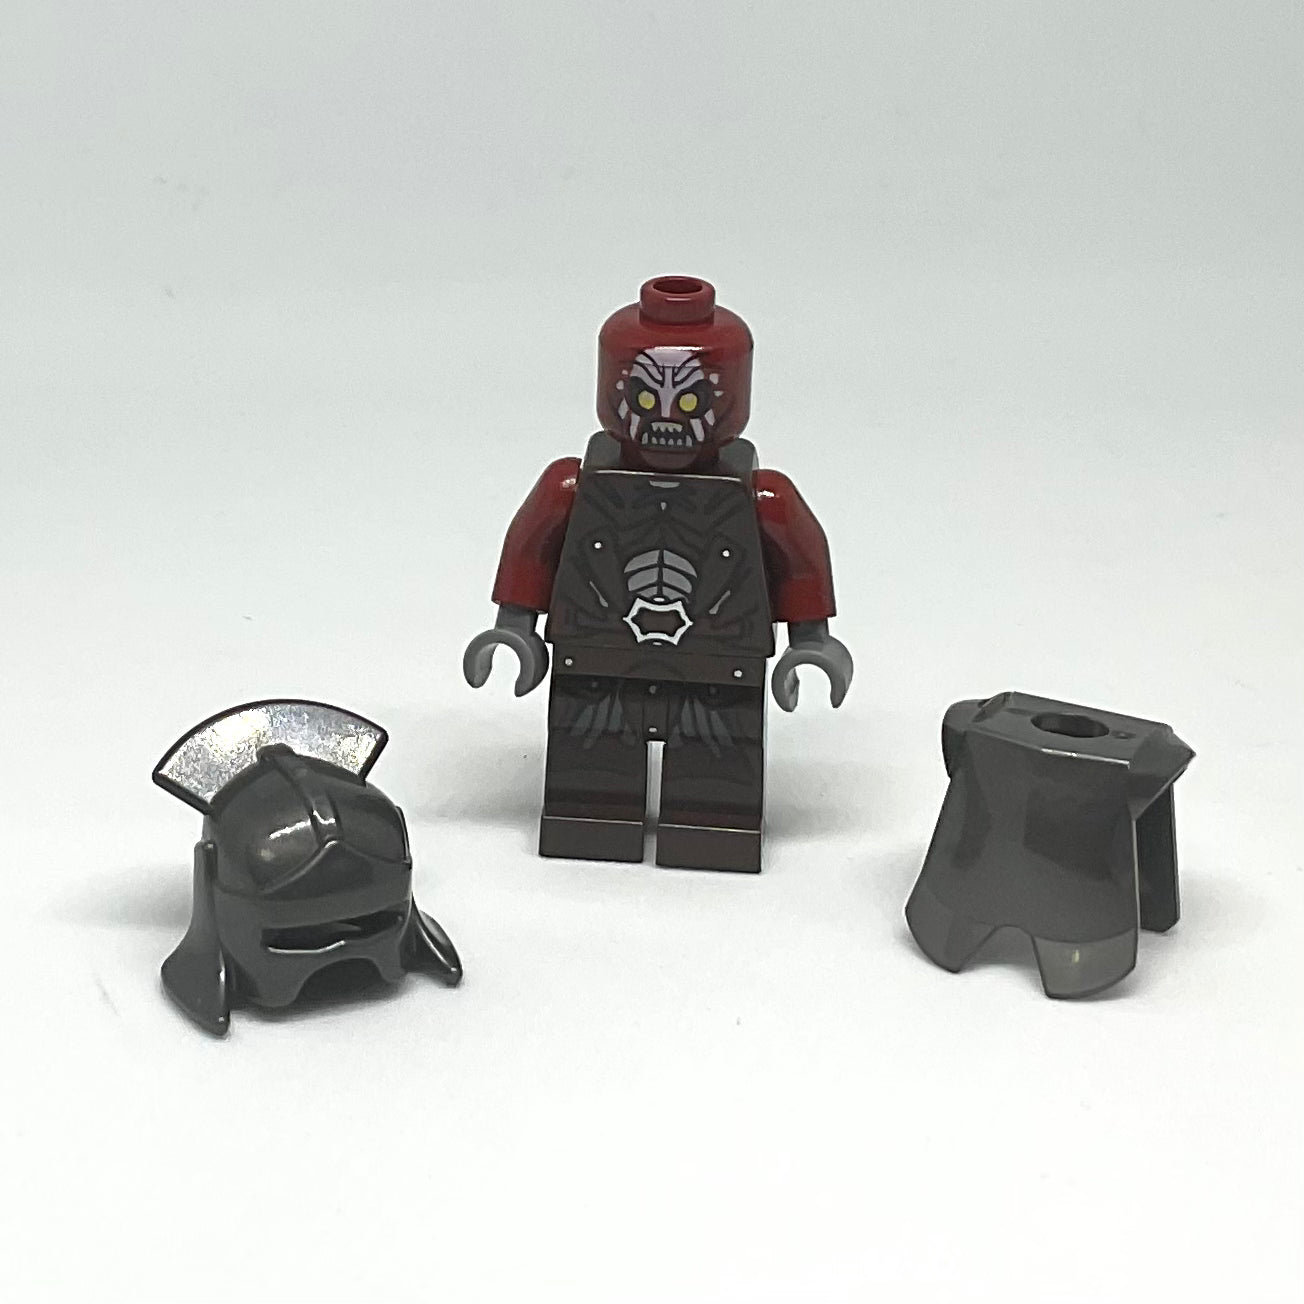 Uruk-hai - Helmet and Armor